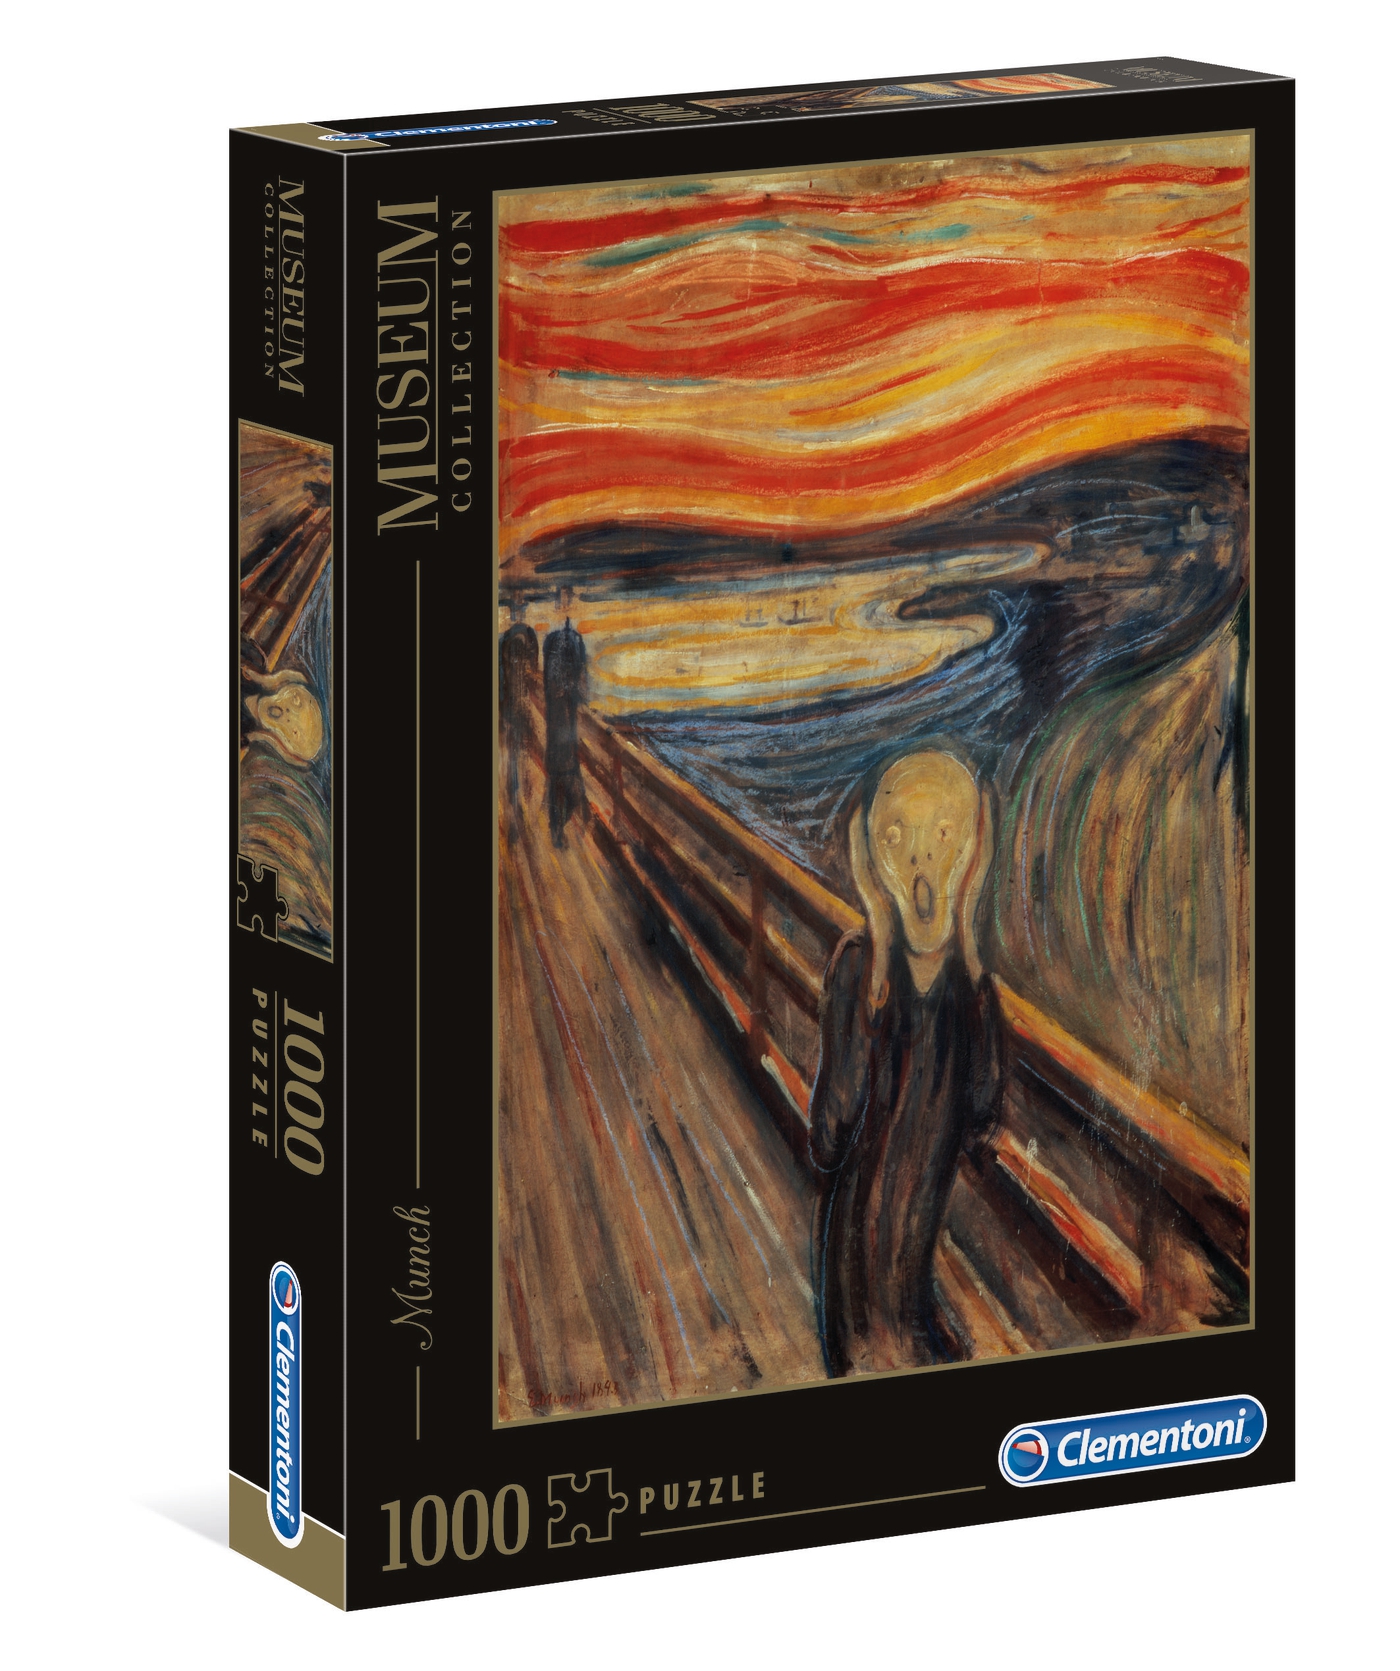 Puzzle 1000 piezas -Munch: El Grito- Clementoni